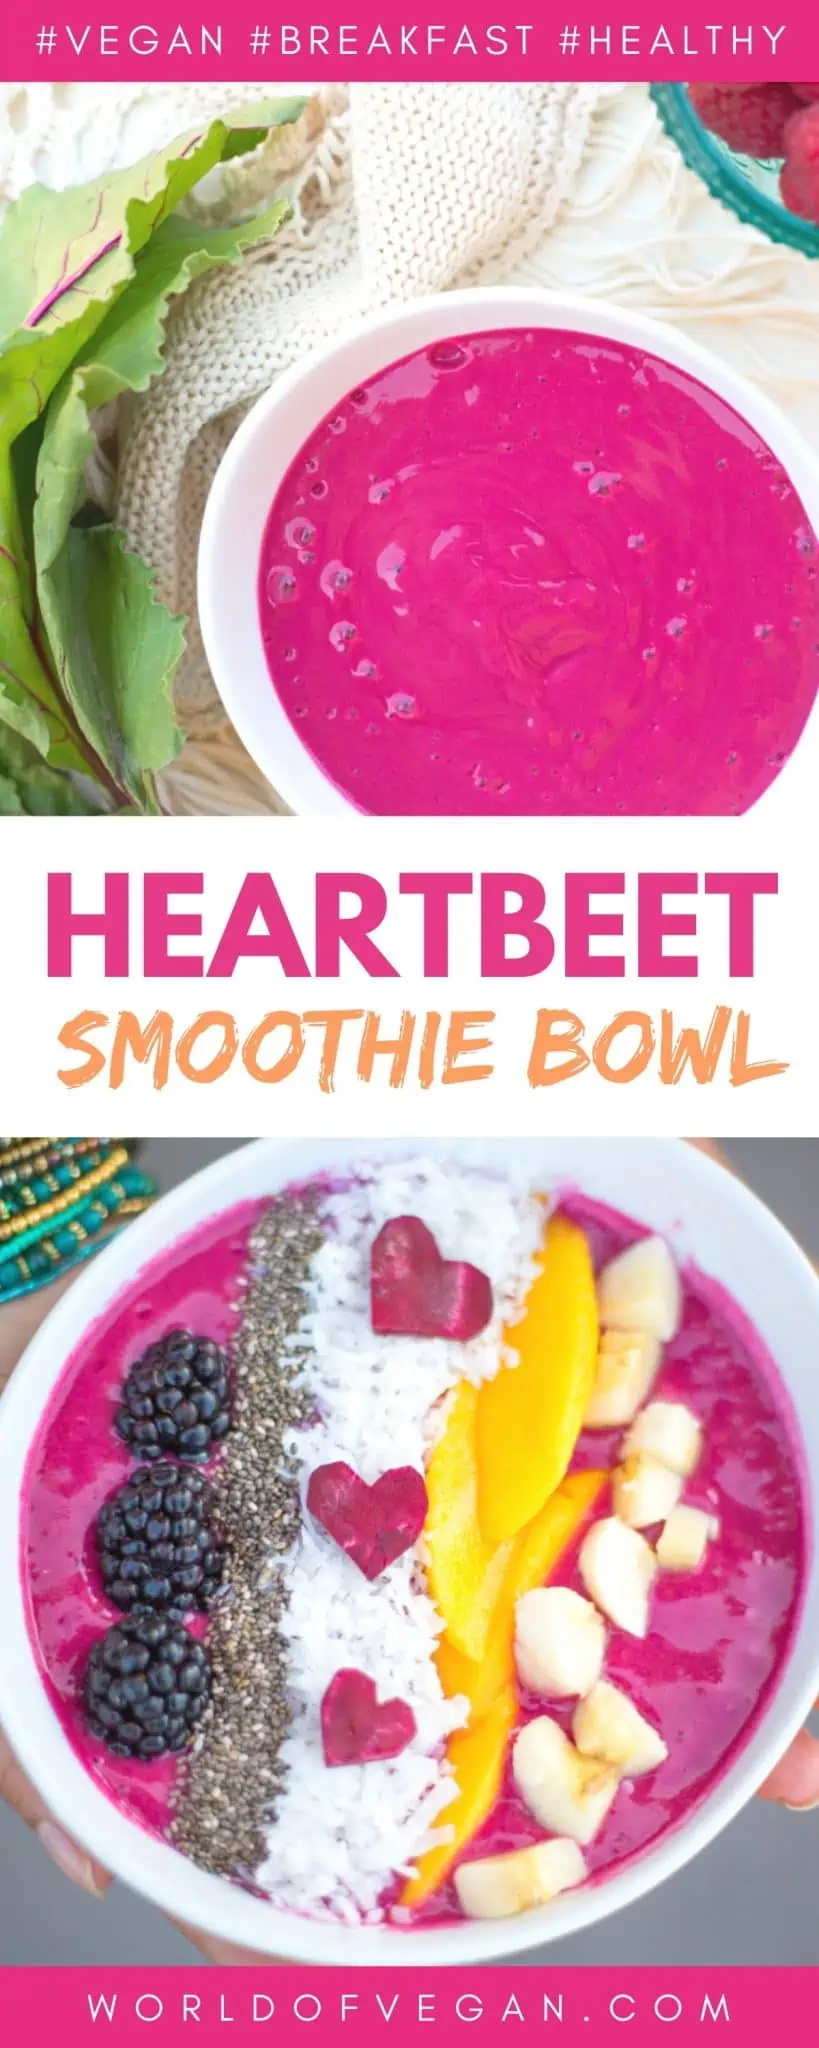 Vegan Heart Beet Smoothie Bowl Recipe